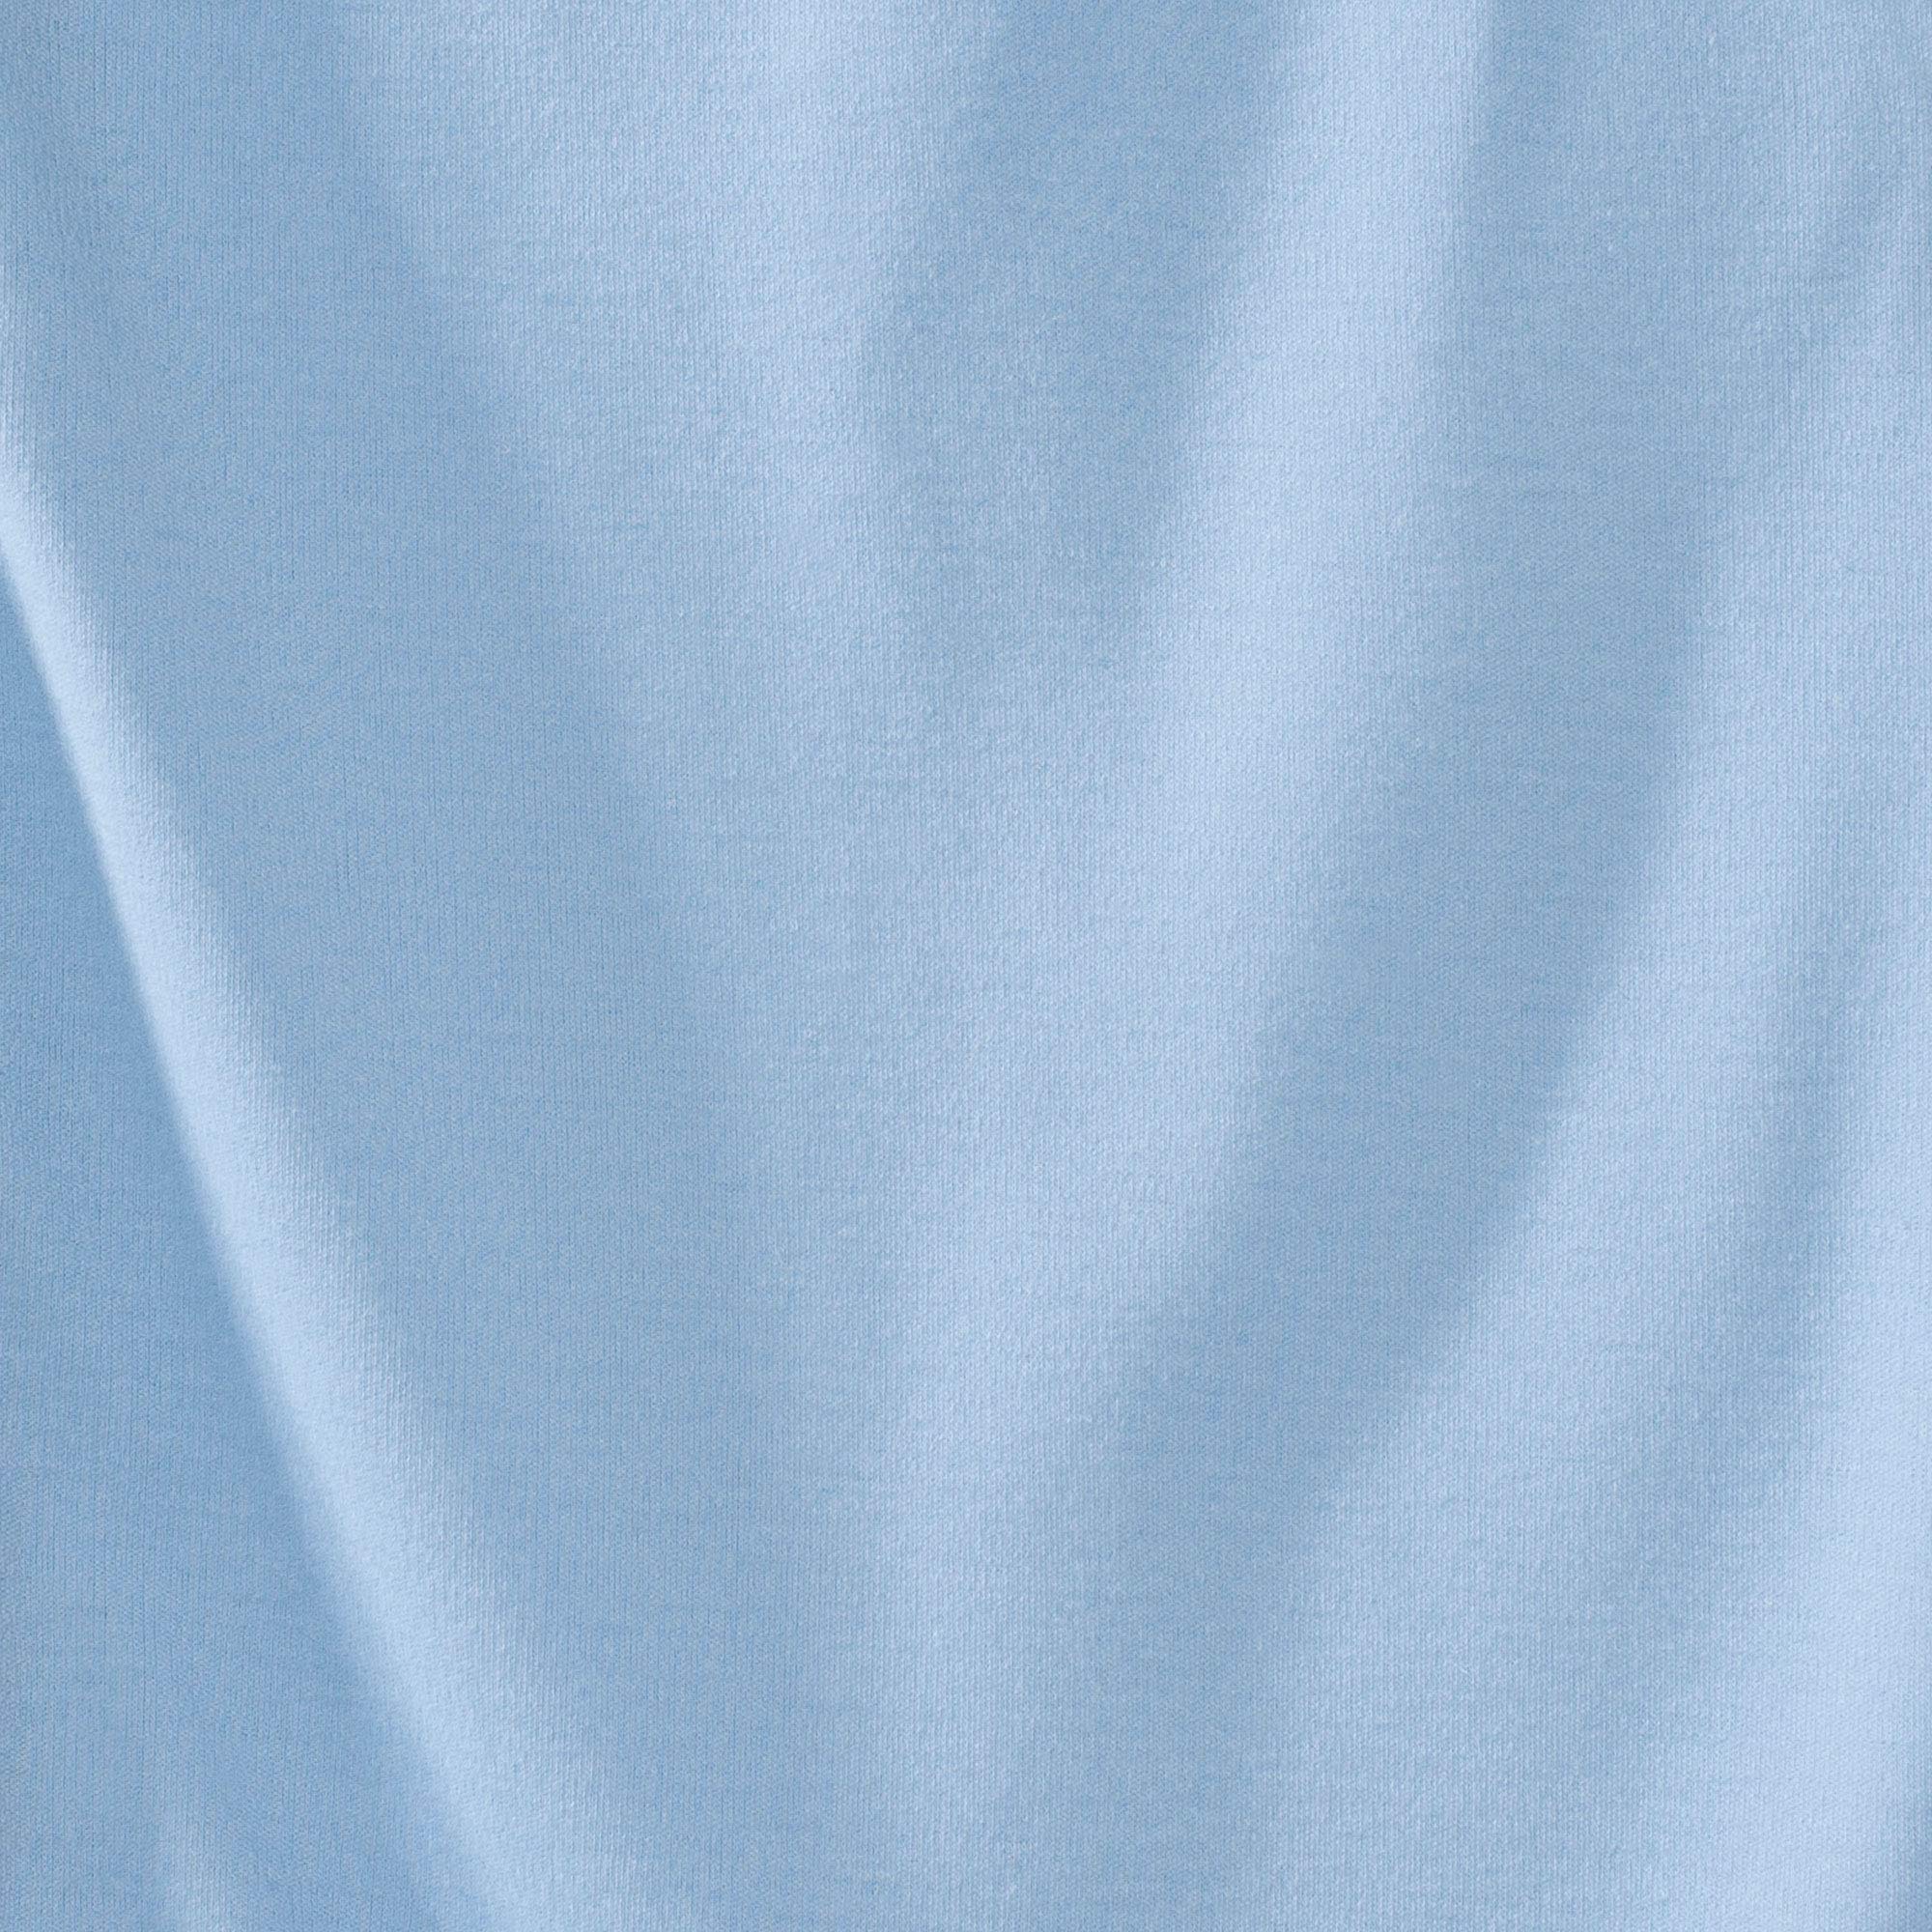 HALO Early Walker Sleepsack Lightweight Knit Wearable Blanket, TOG 0.5, Blue, X-Large